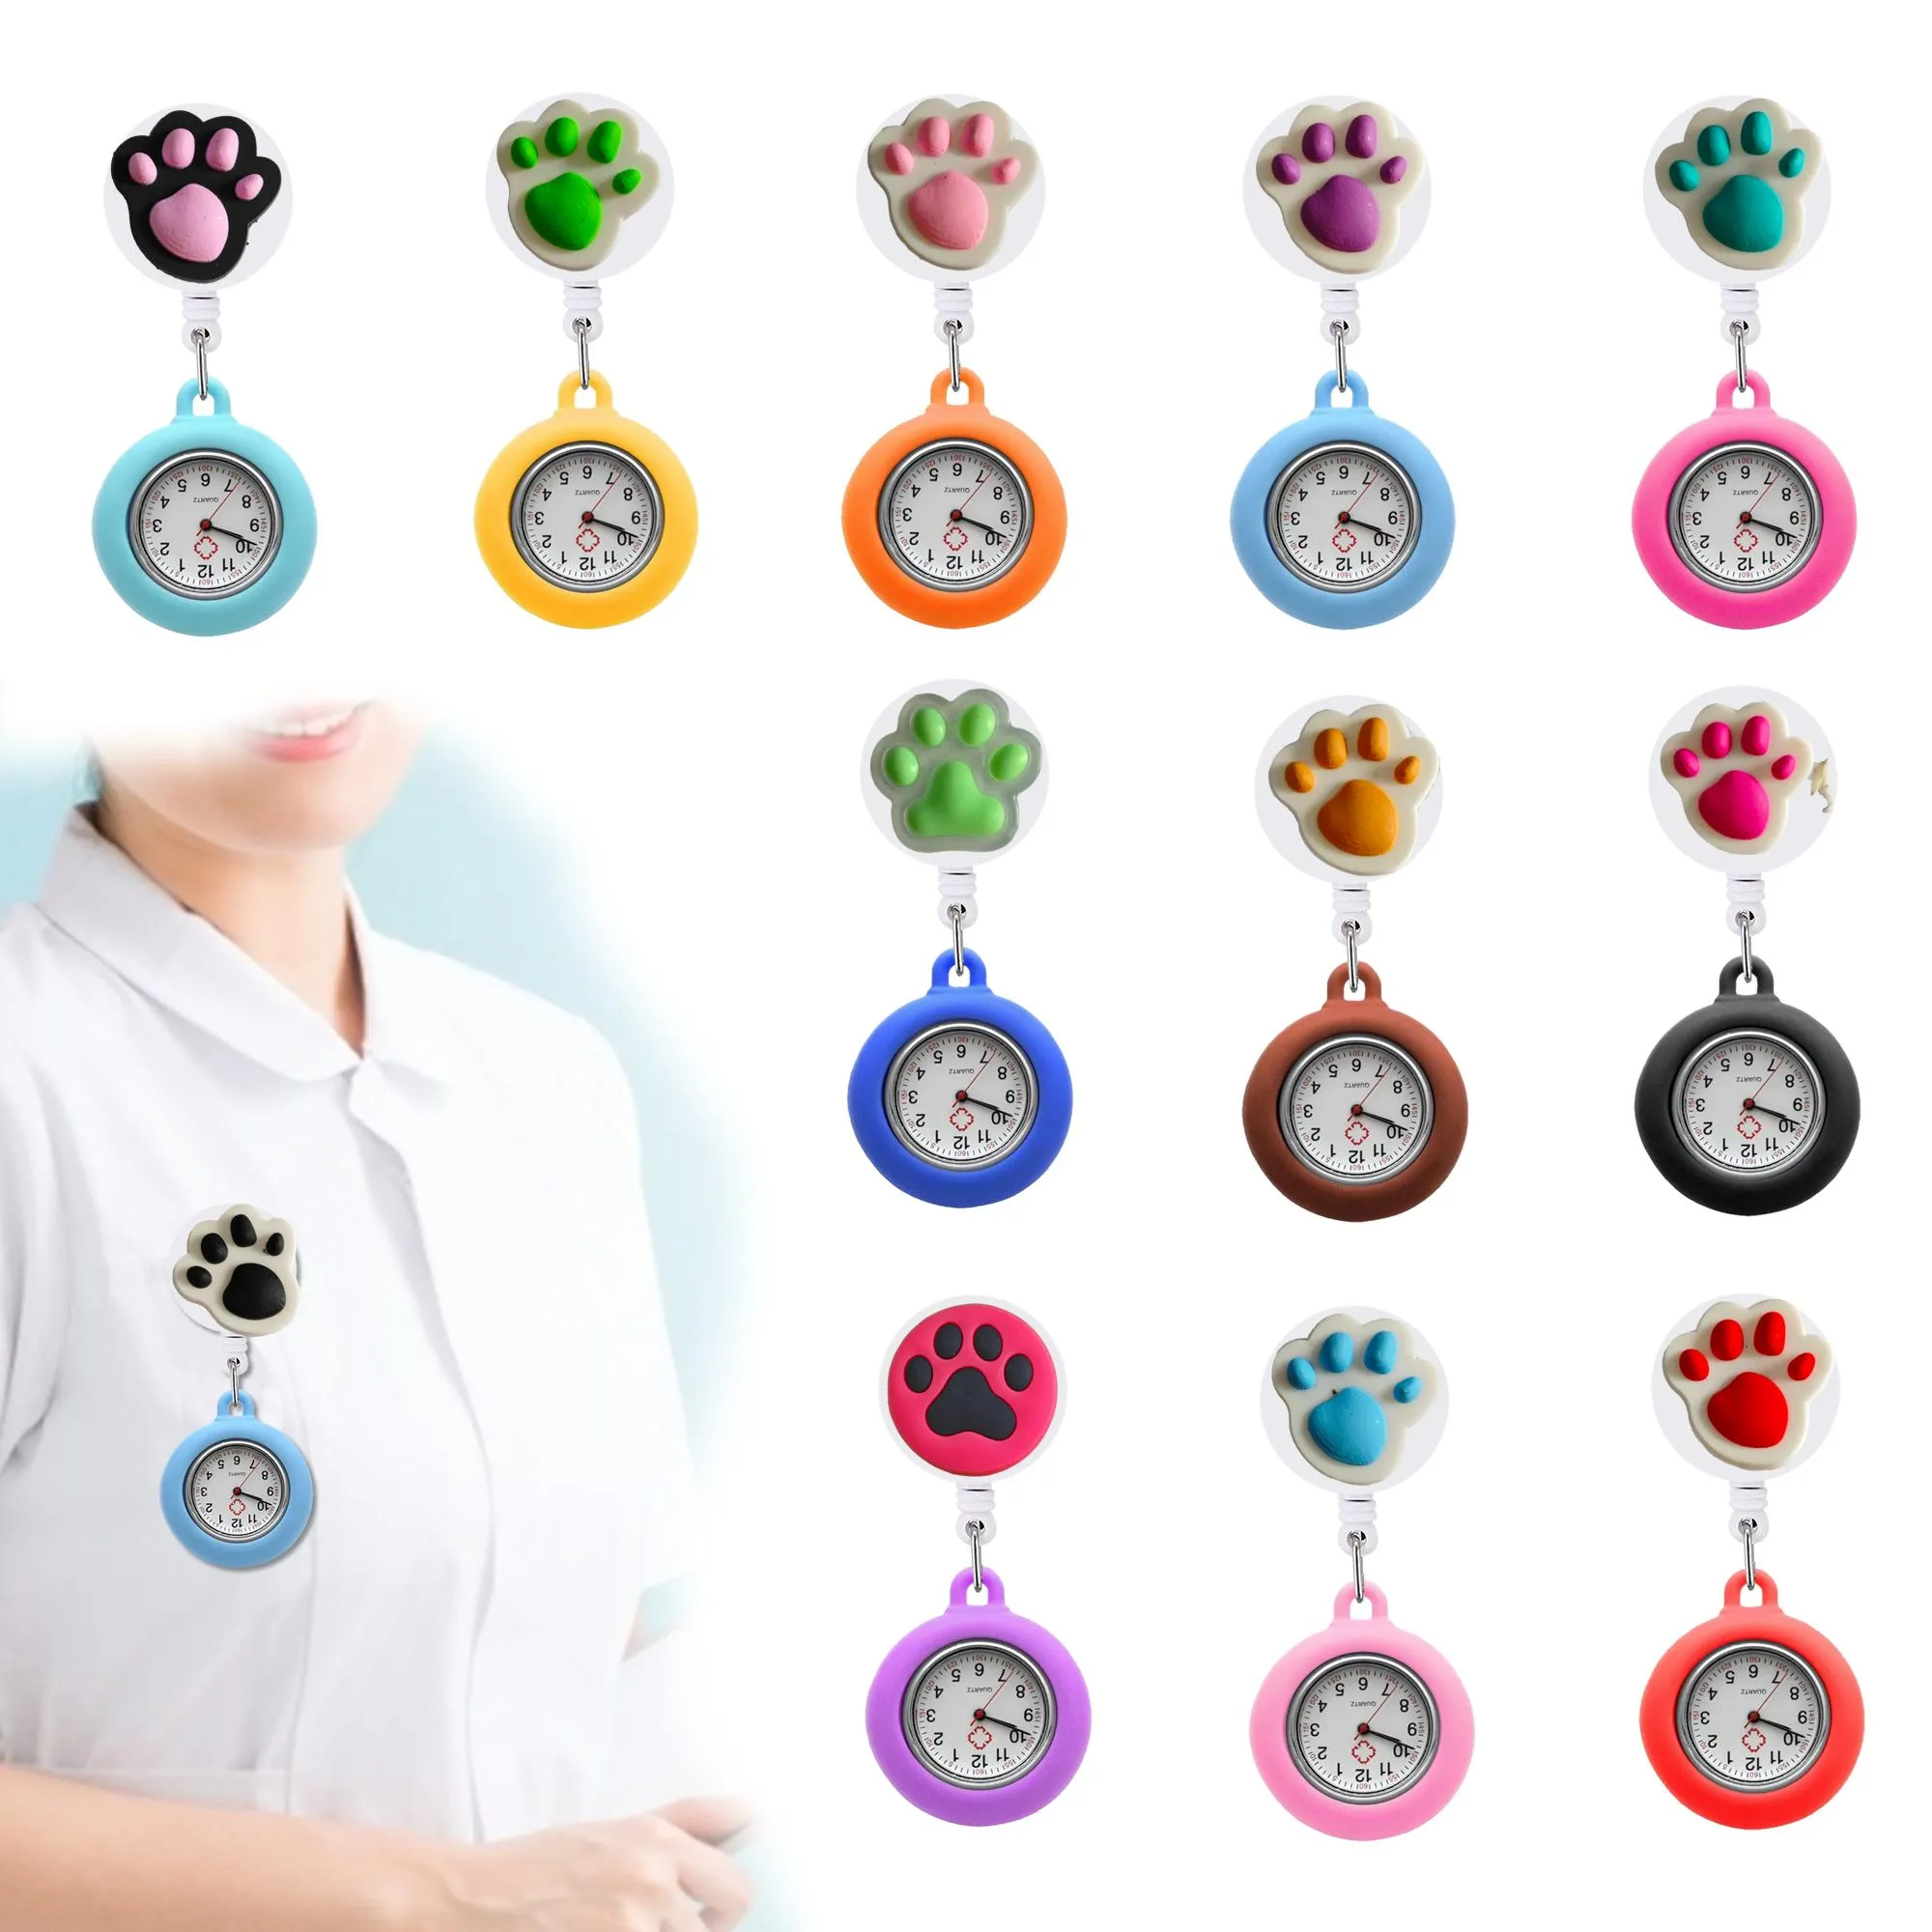 Altri orologi tascabili per clip artigli per la casa Nurse for Women Clip-On Hanging Bass Watch Badge Accessori Nurses Delivery Delivery Ot7rv